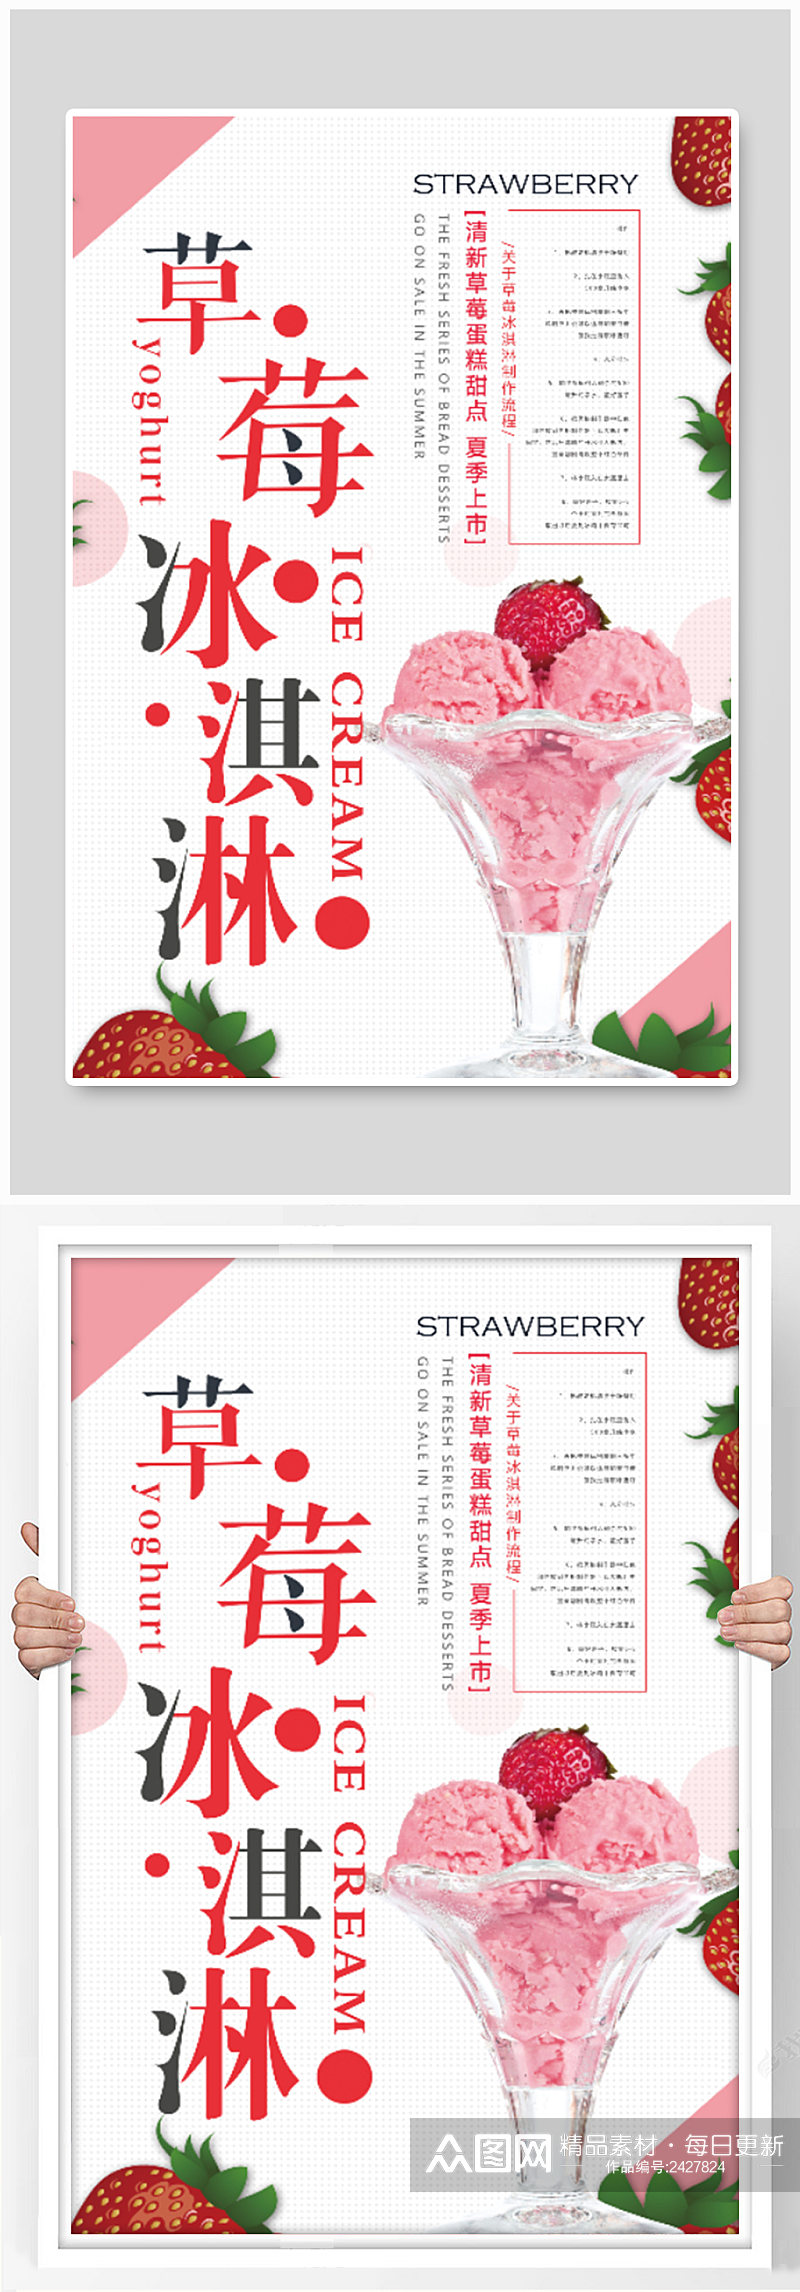 草莓冰淇淋甜品店海报素材